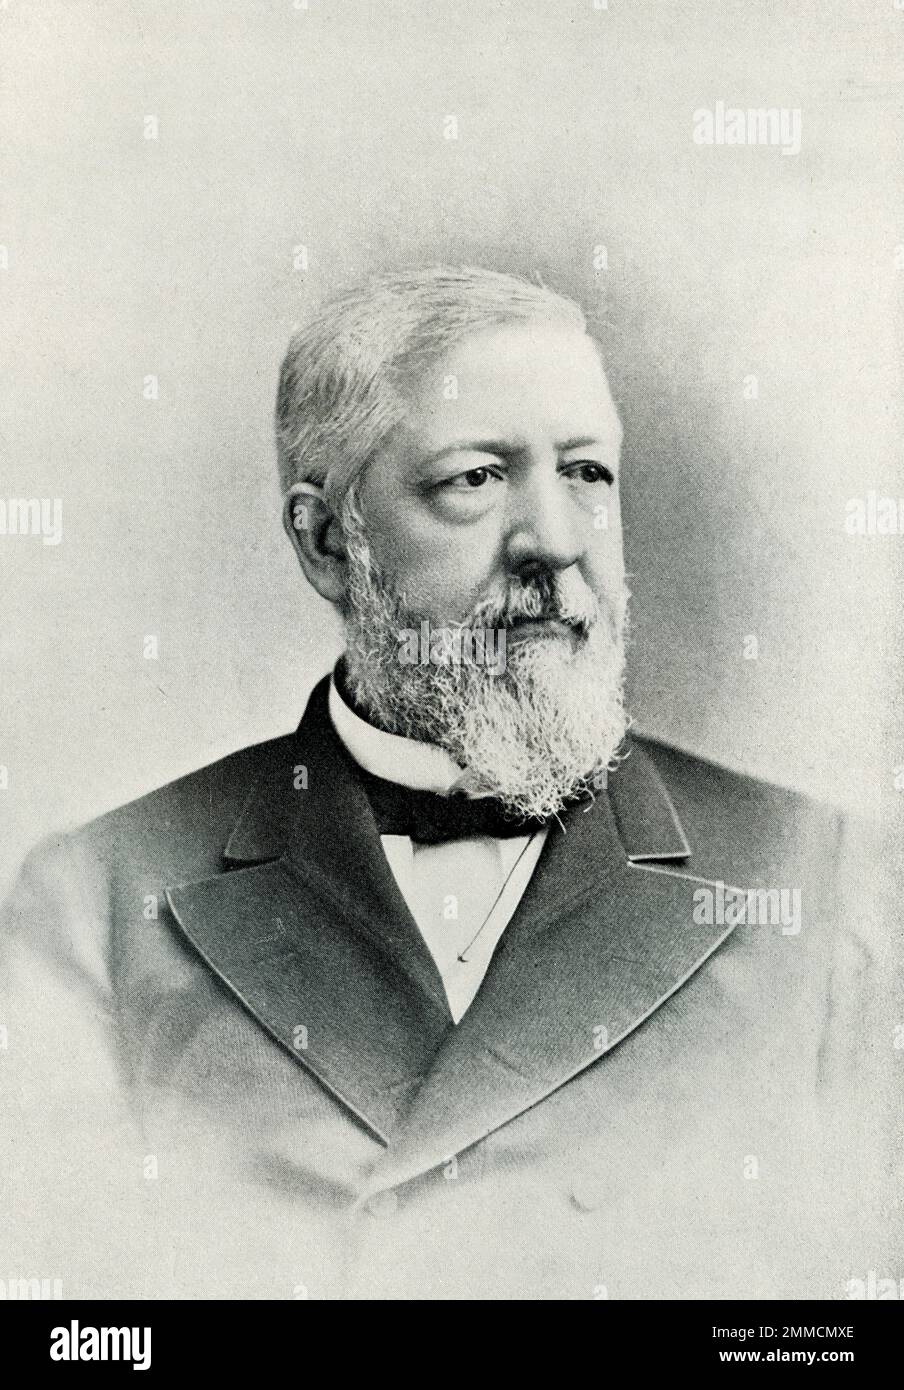 James Gillespie Blaine (1830-1893) était un politicien américain. Il a occupé plusieurs bureaux publics, y compris des États-Unis, représentant du Maine de 1863 à 1876 et des États-Unis Secrétaire d'État en 1881 et de 1889 à 1892. Son utilisation inappropriée de l'influence dans le cas d'un chemin de fer en Arkansas a empêché sa nomination au poste de président en 1876. Il a été nommé président en 1884, mais défait par les démocrates. Il a joué un rôle déterminant dans la réalisation du premier Congrès panaméricain. Banque D'Images